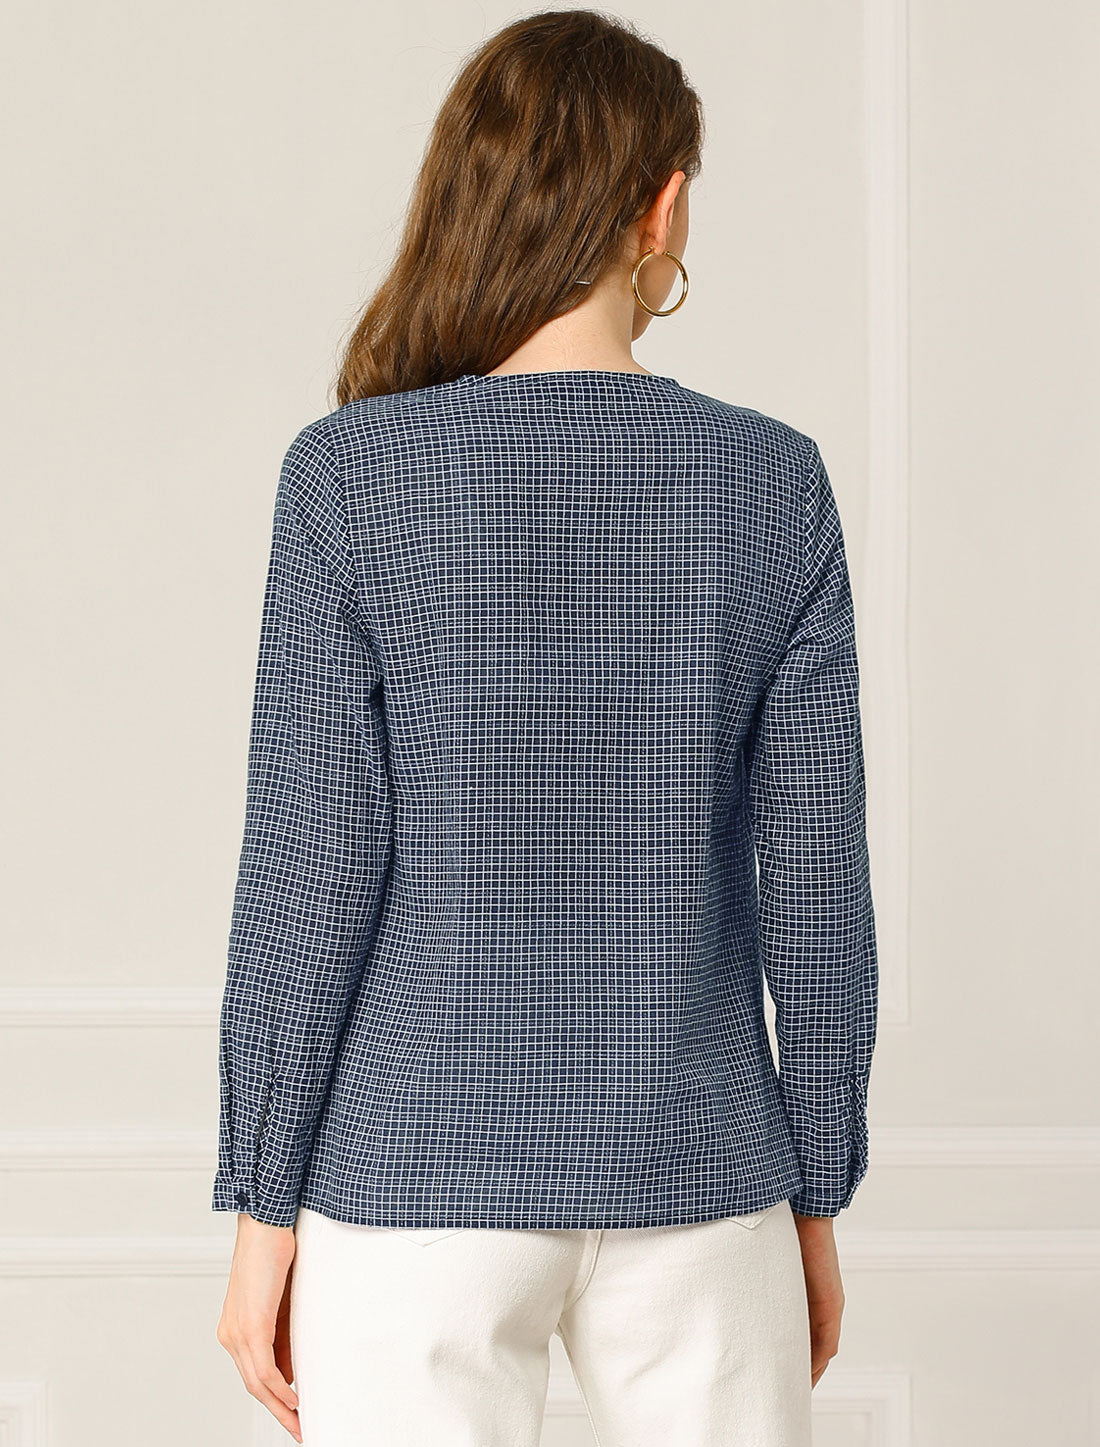 Allegra K Plaid Tops Blouse Zipper Front Spring Fall Long Sleeve Shirt